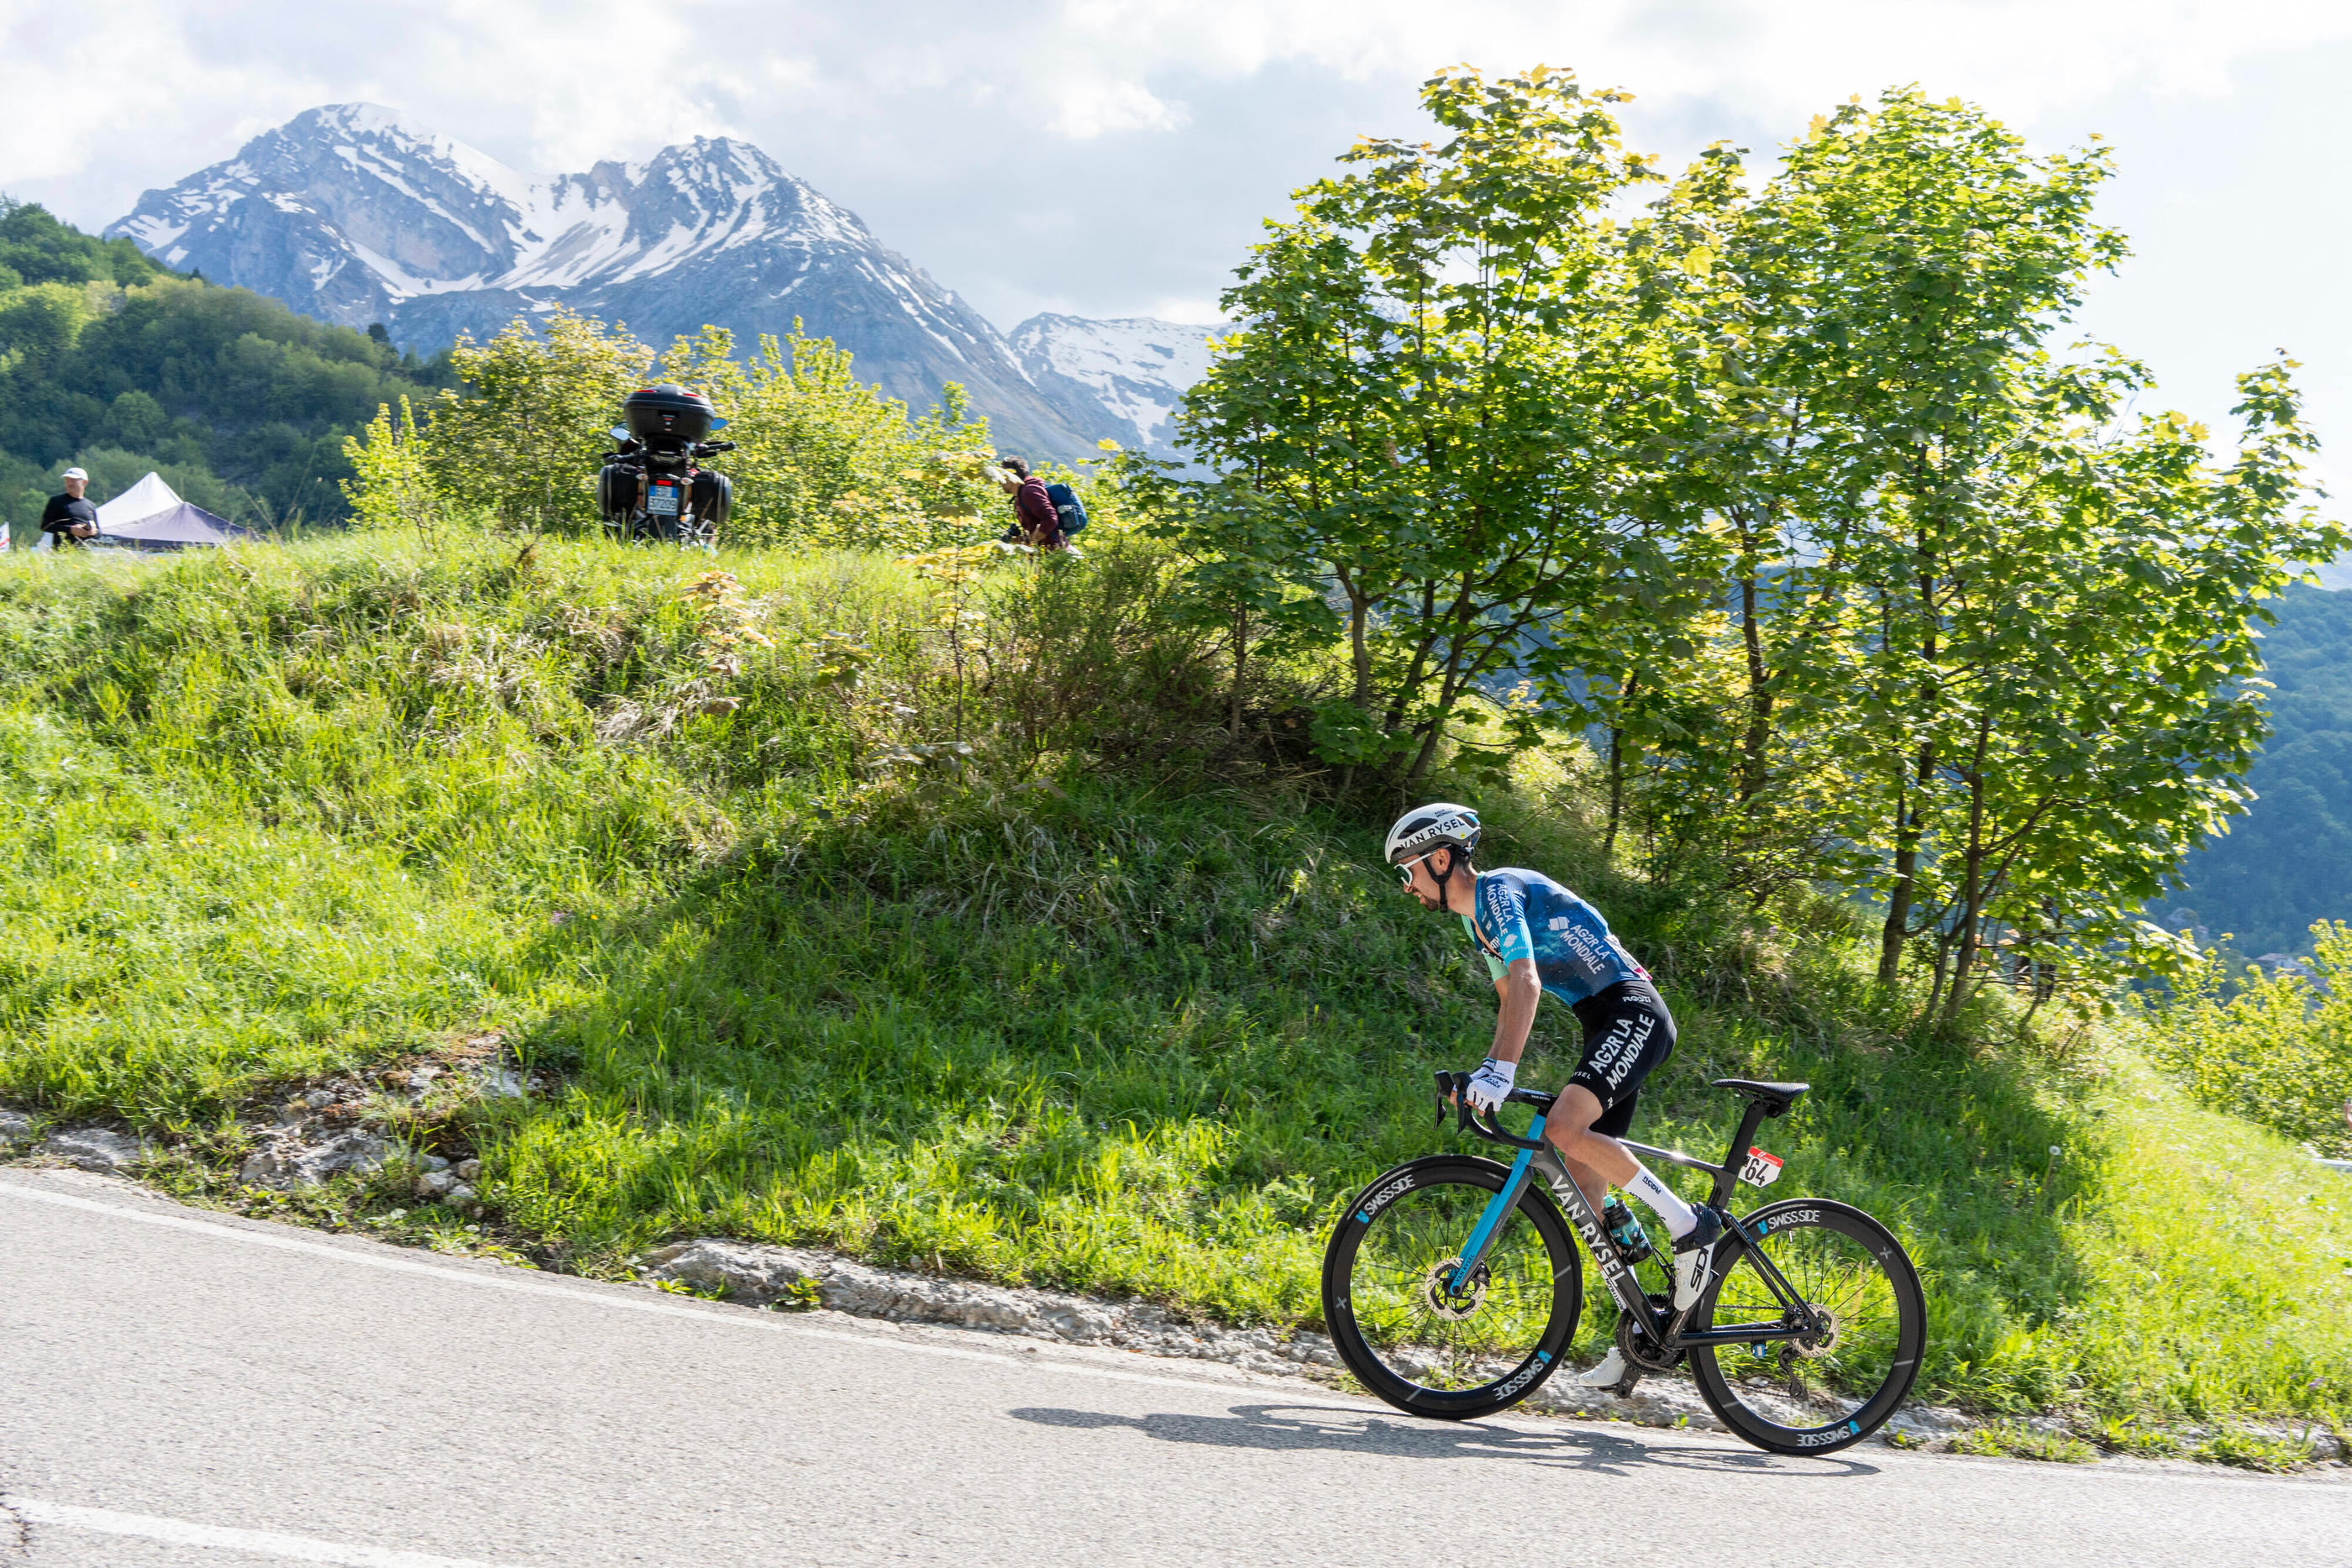 Valentin Paret-Peintre a remporté la première victoire de sa carrière sur un grand tour, ce mardi sur le Giro. Icon Sport/Stefano Costantino